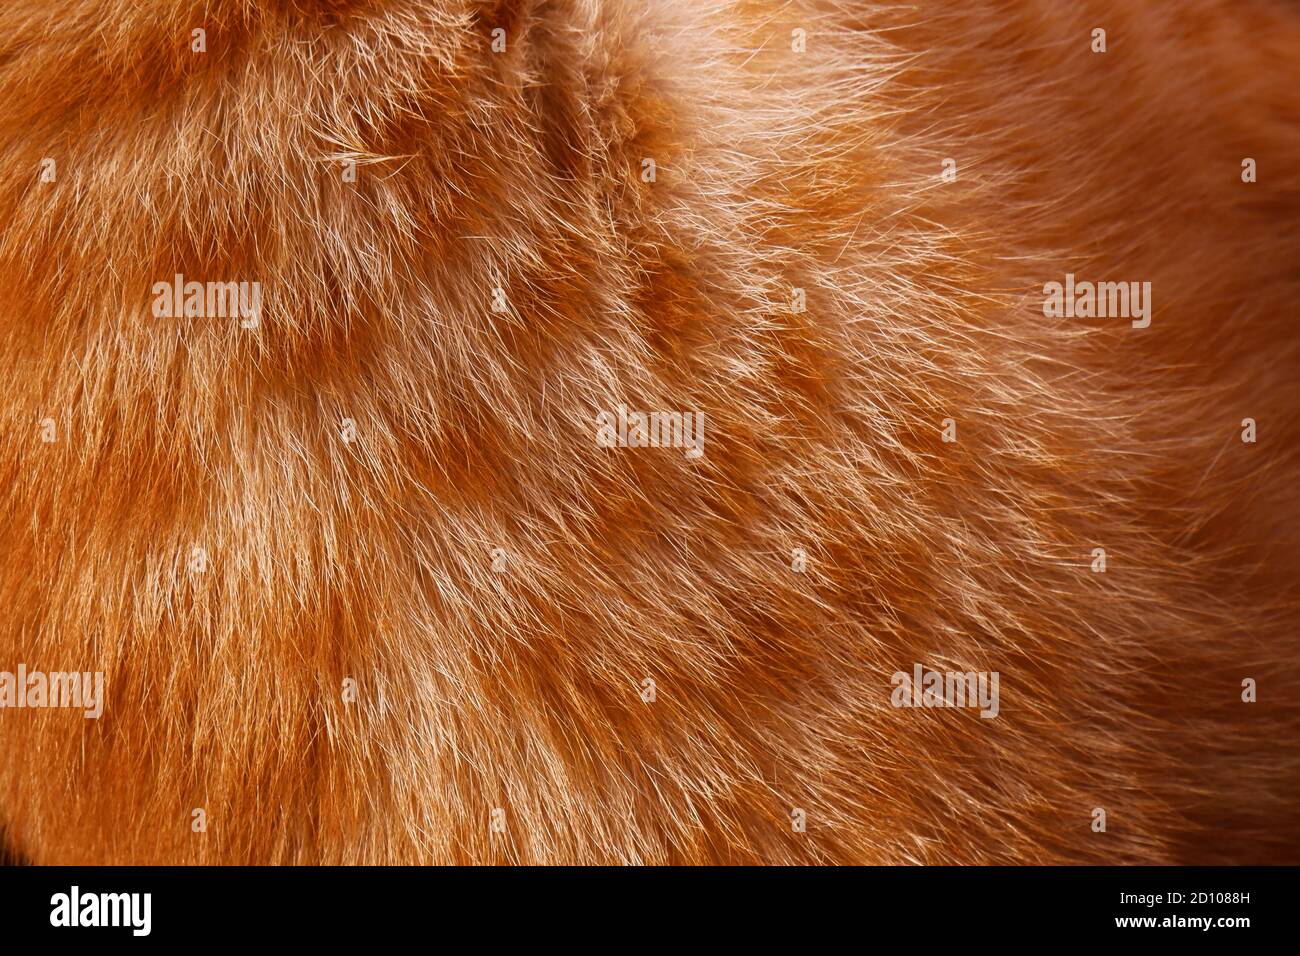 Eine Nahaufnahme von orange & weiß Katzenfell Textur Im Vollformat Stockfoto